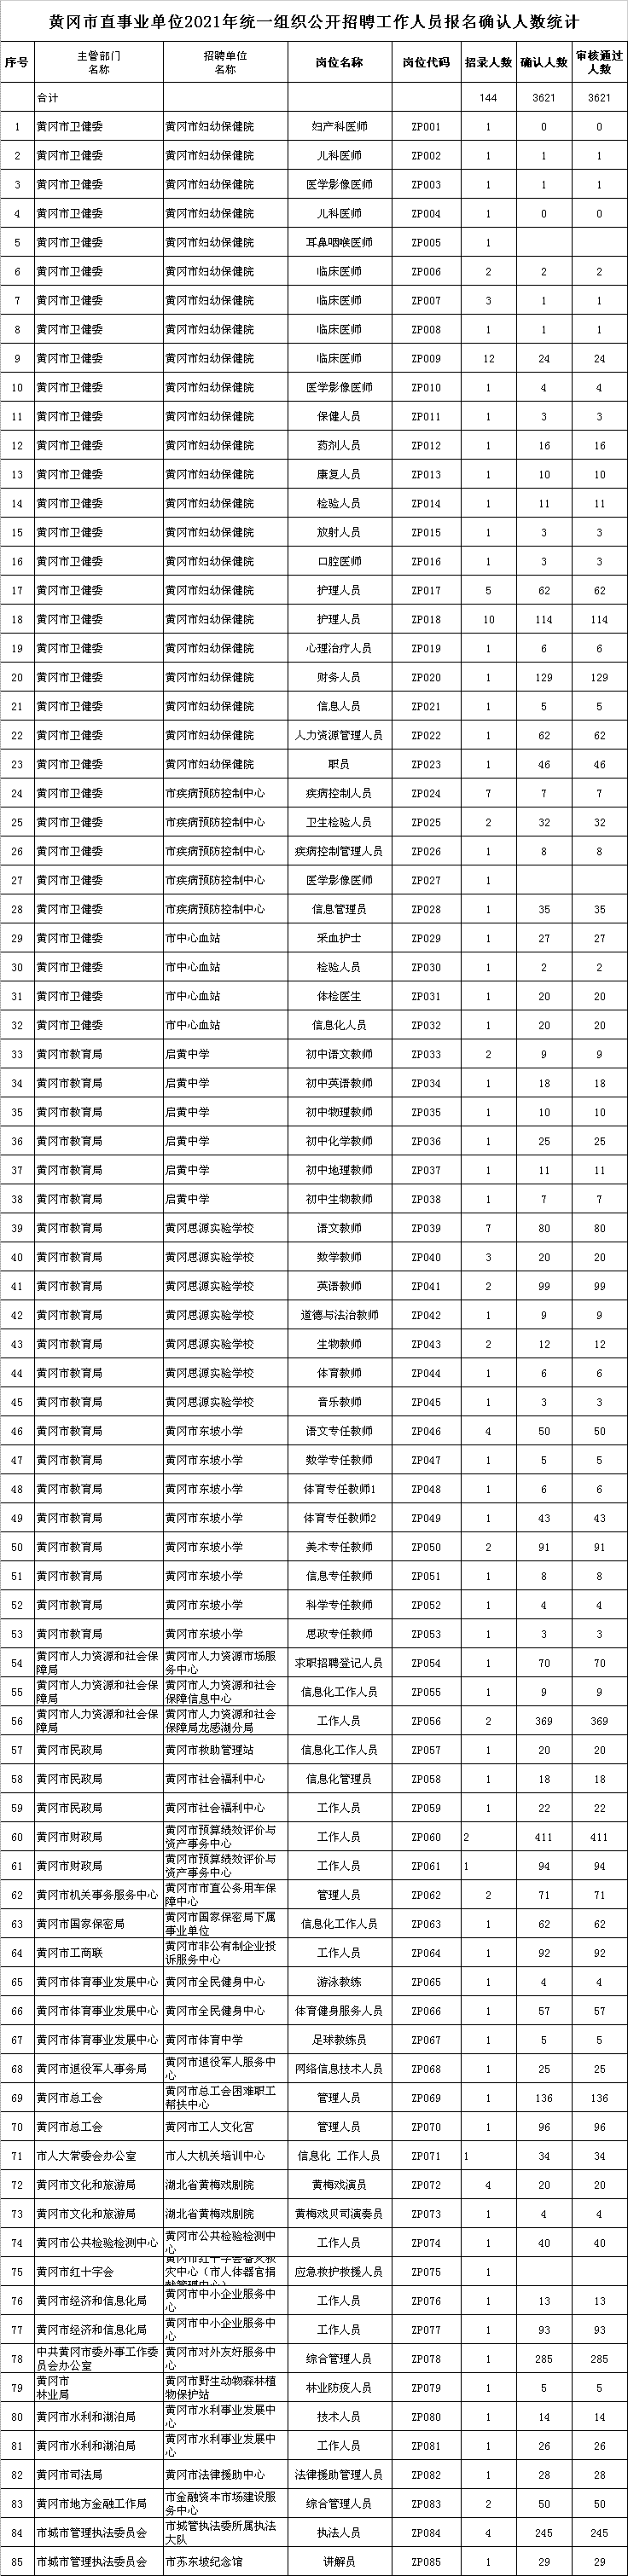 2021黄冈市直事业单位招聘报名确认人数统计